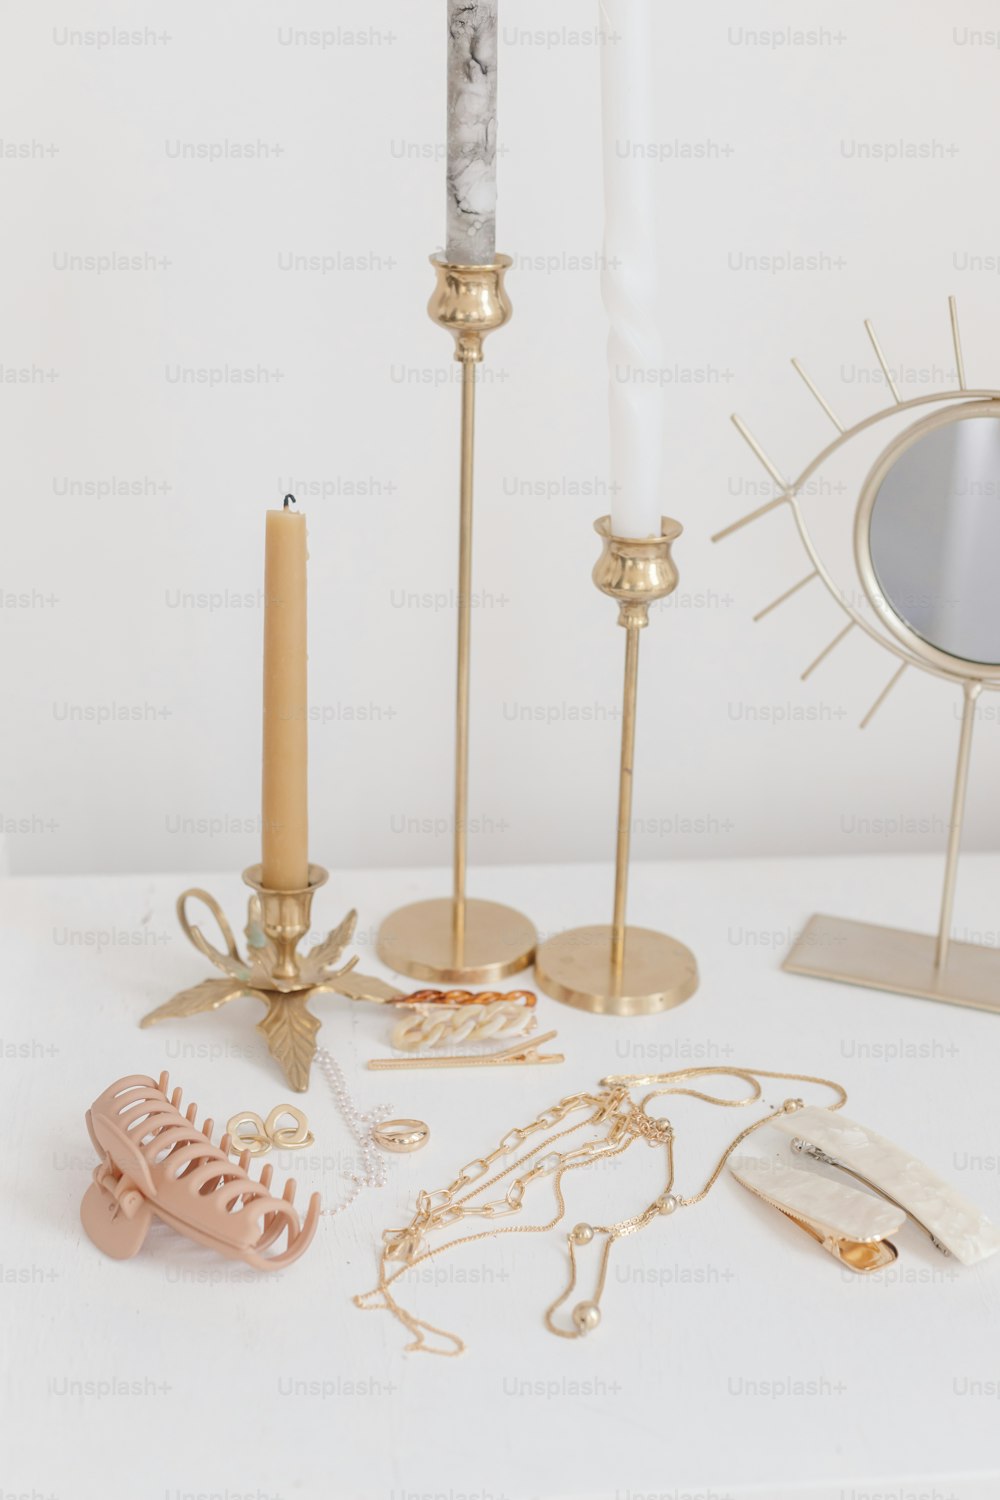 보호 액세서리, 내부 디테일. 현대적인 황금 보석, 빈티지 양초와 보헤미안 거울이 있는 흰색 테이블에 있는 헤어클립. 세련된 골드 링, 체인 목걸이, 귀걸이, 머리핀 및 바렛.